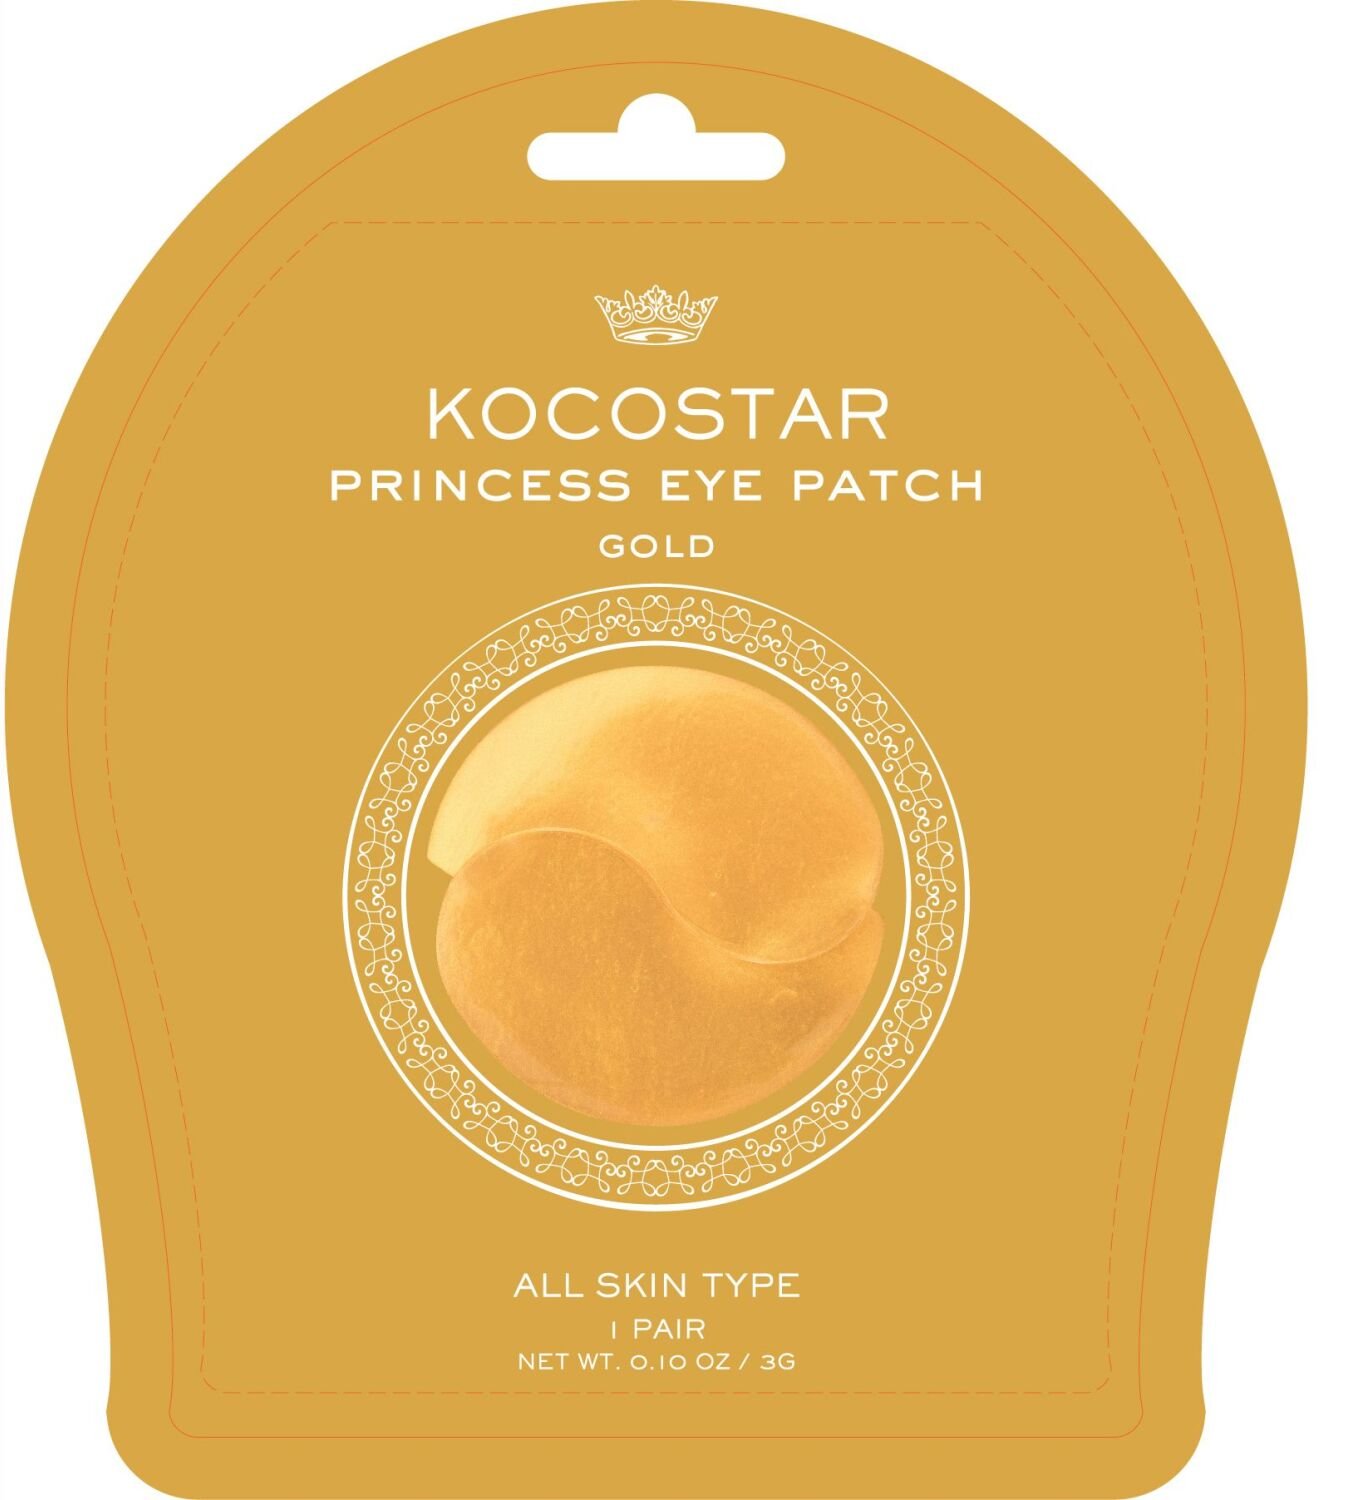 Kocostar Princess Eye Patch Gold 3 g / 2 pcs